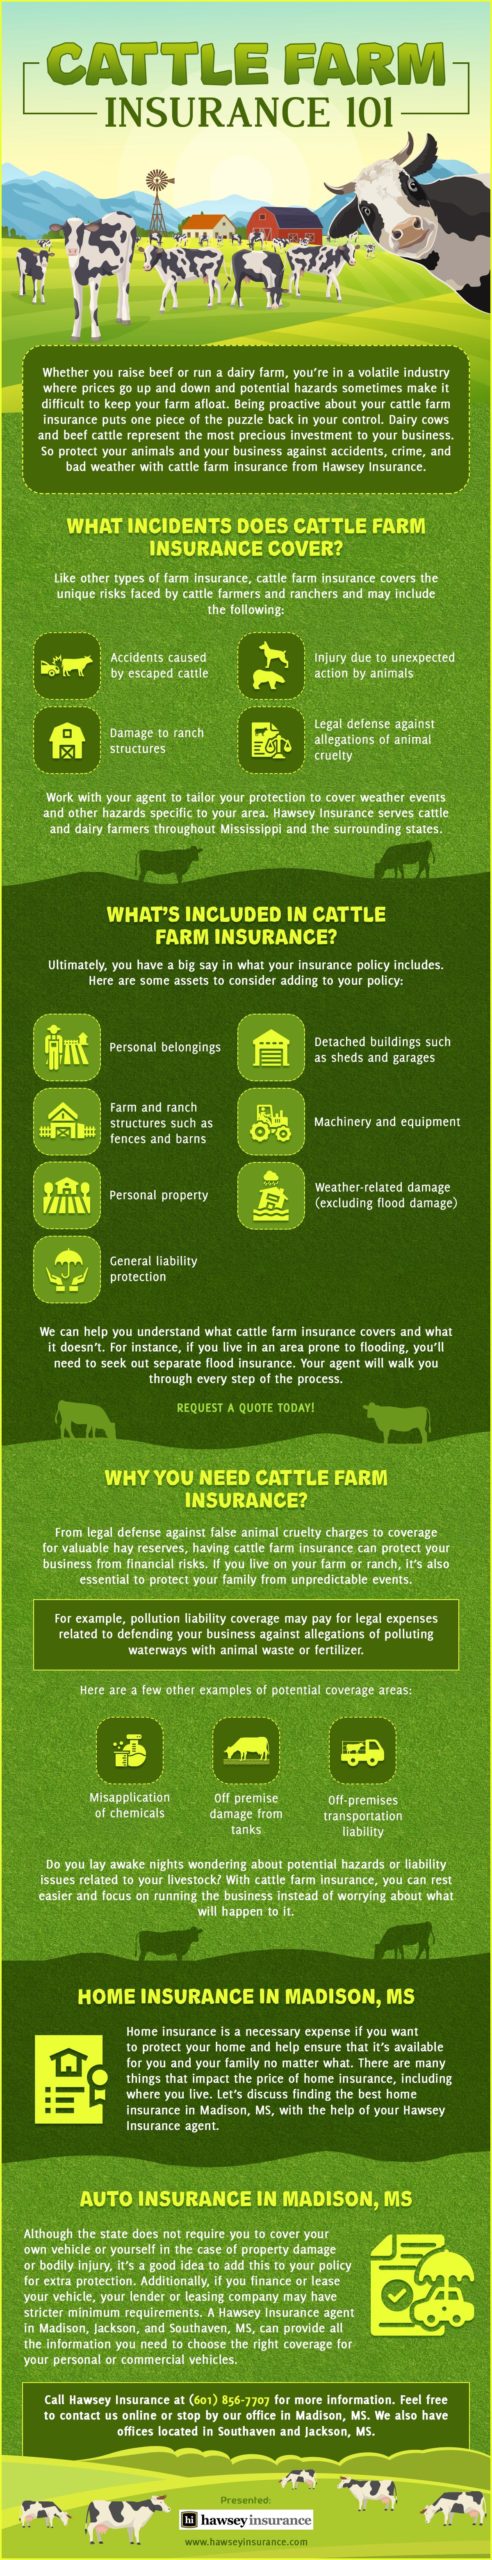 Cattle Farm Insurance 101